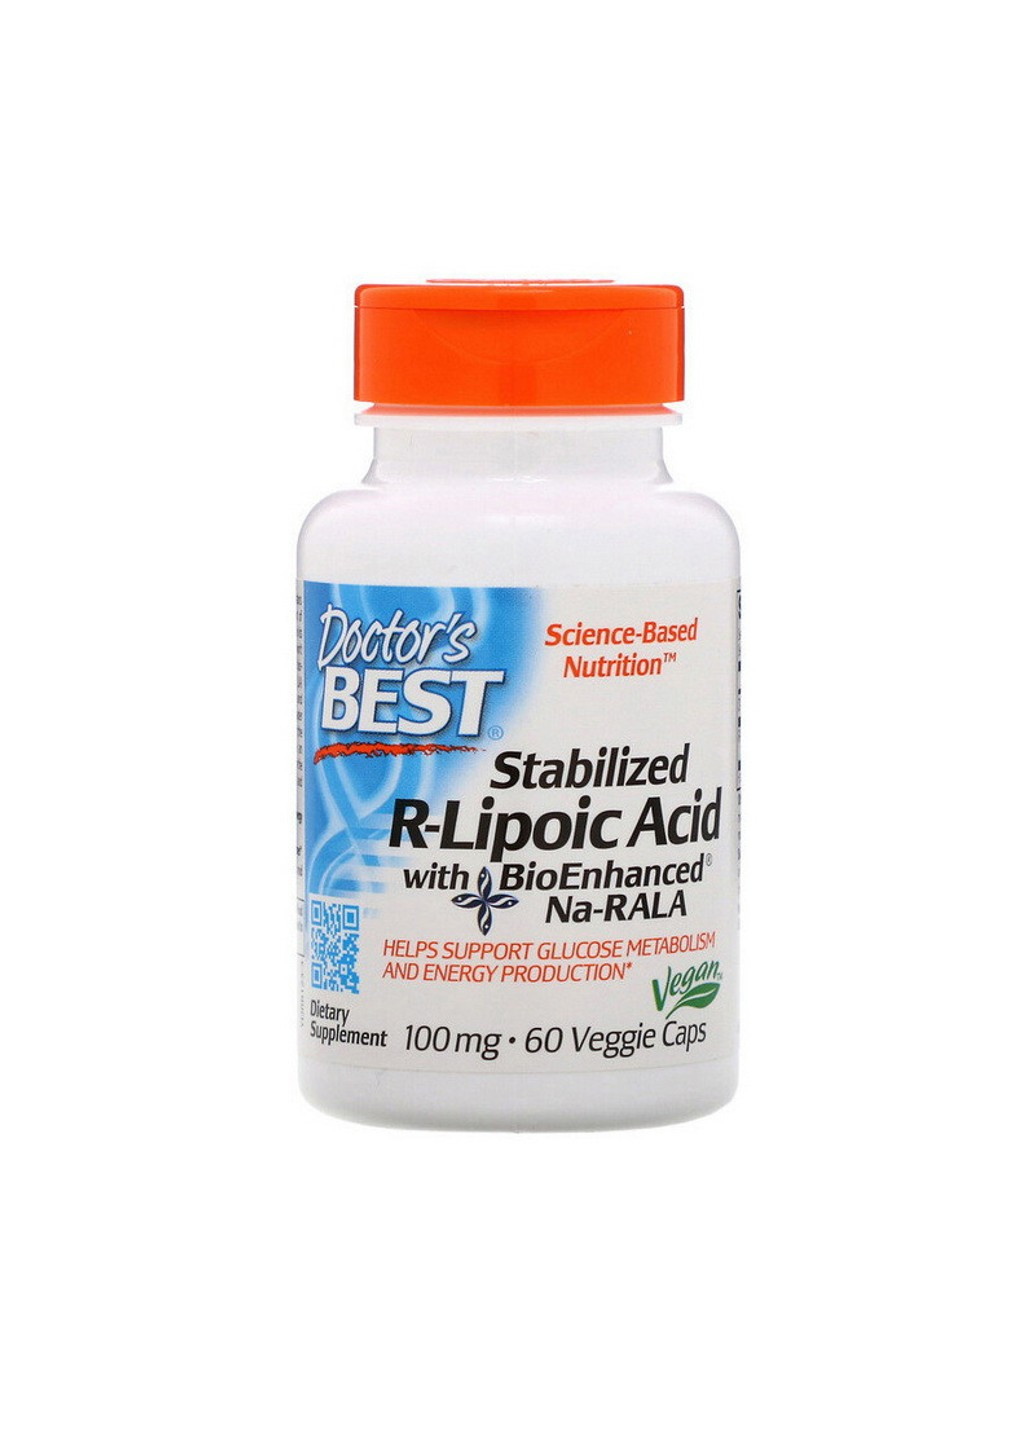 R-липолевая кислота Stabilized R-lipoic Acid 100 mg (60 капс) доктор бест Doctor's Best (255407591)